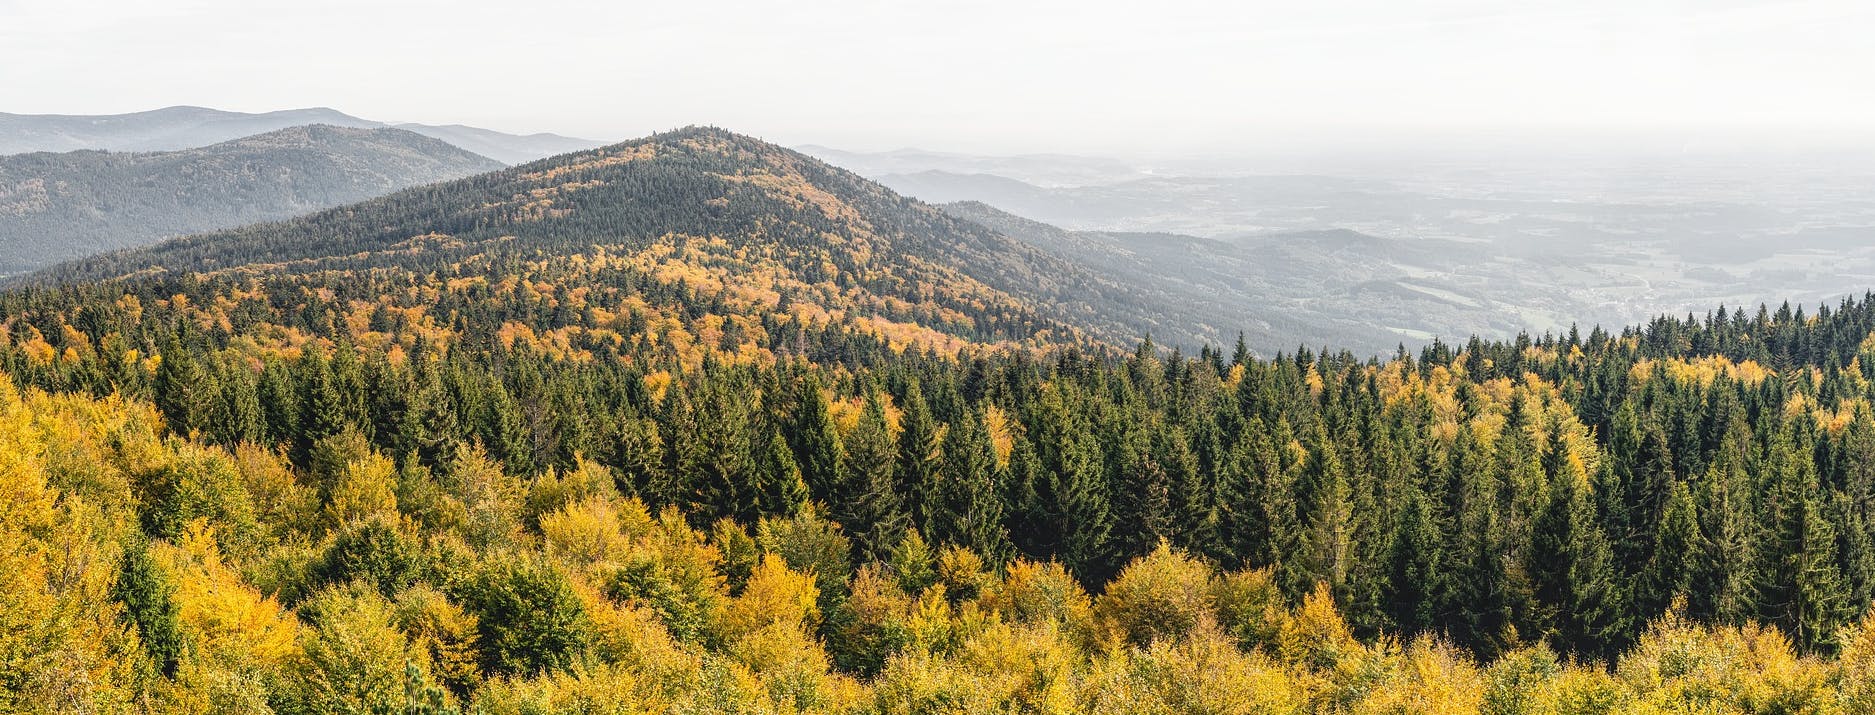 Ausblick von einem Berg, der den Mischwald im Bayerischen Wald zeigt (Foto: Felix Mittermeier)